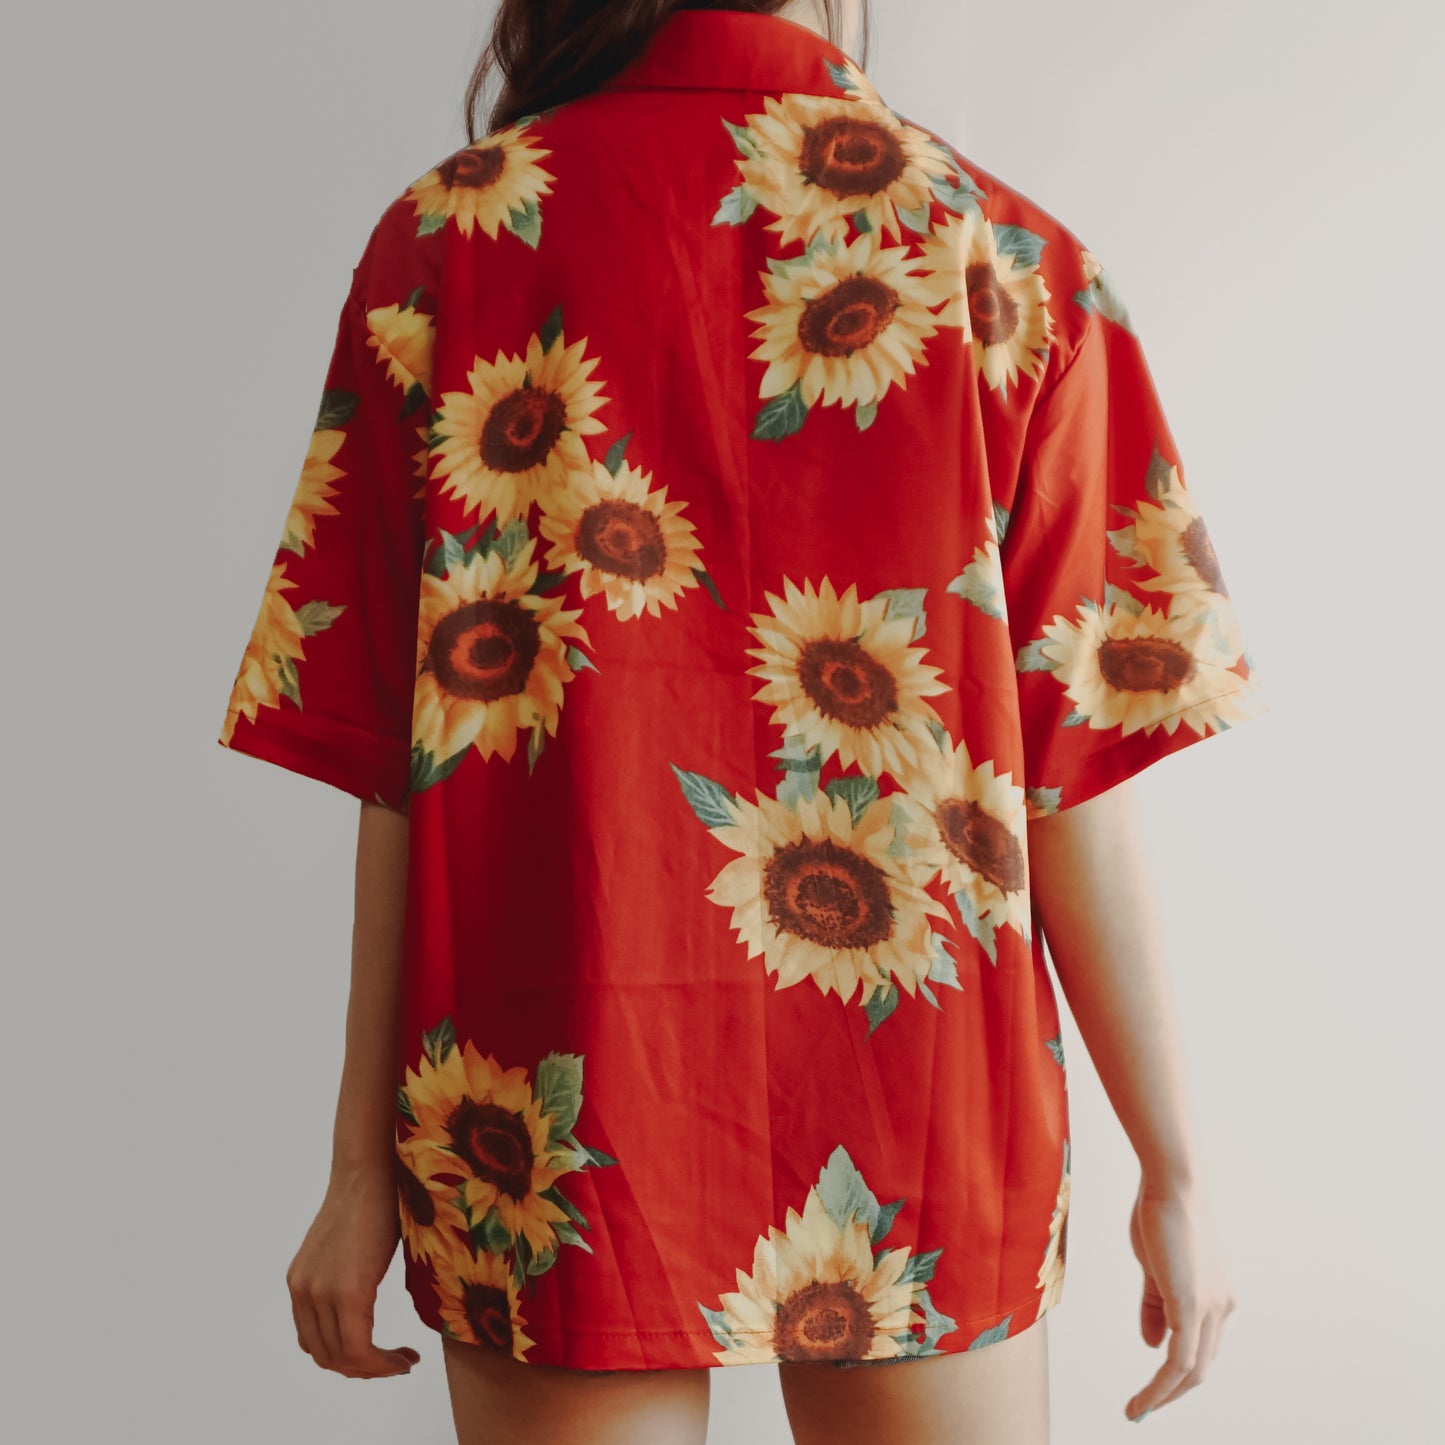 Sunflower Shirt (Red)